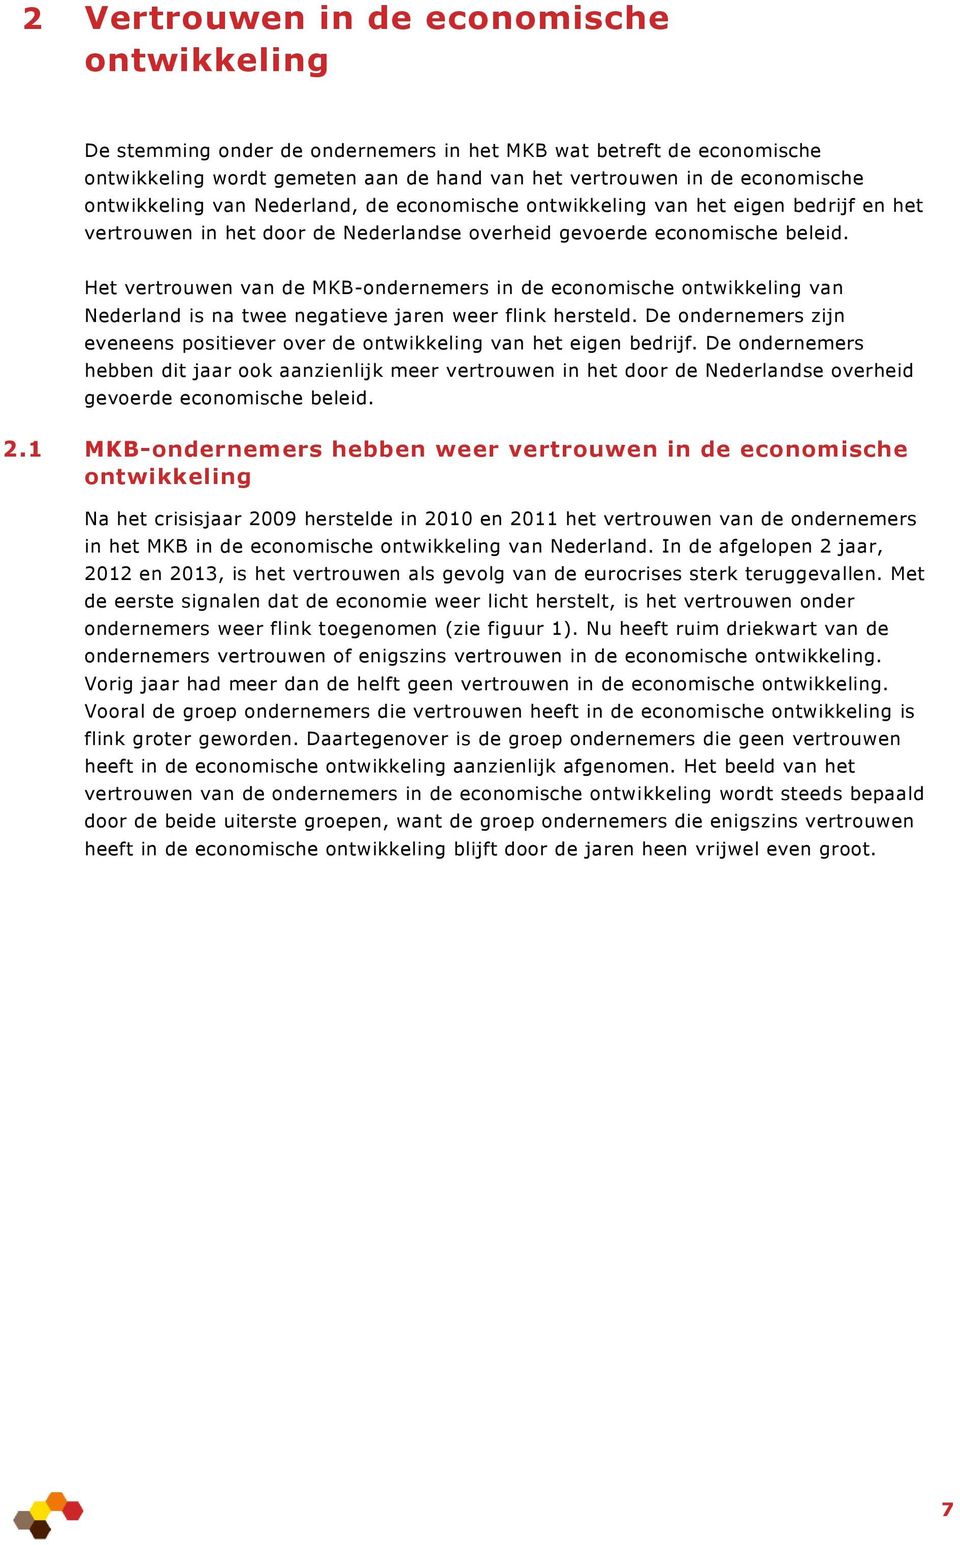 Het vertrouwen van de MKB-ondernemers in de economische ontwikkeling van Nederland is na twee negatieve jaren weer flink hersteld.